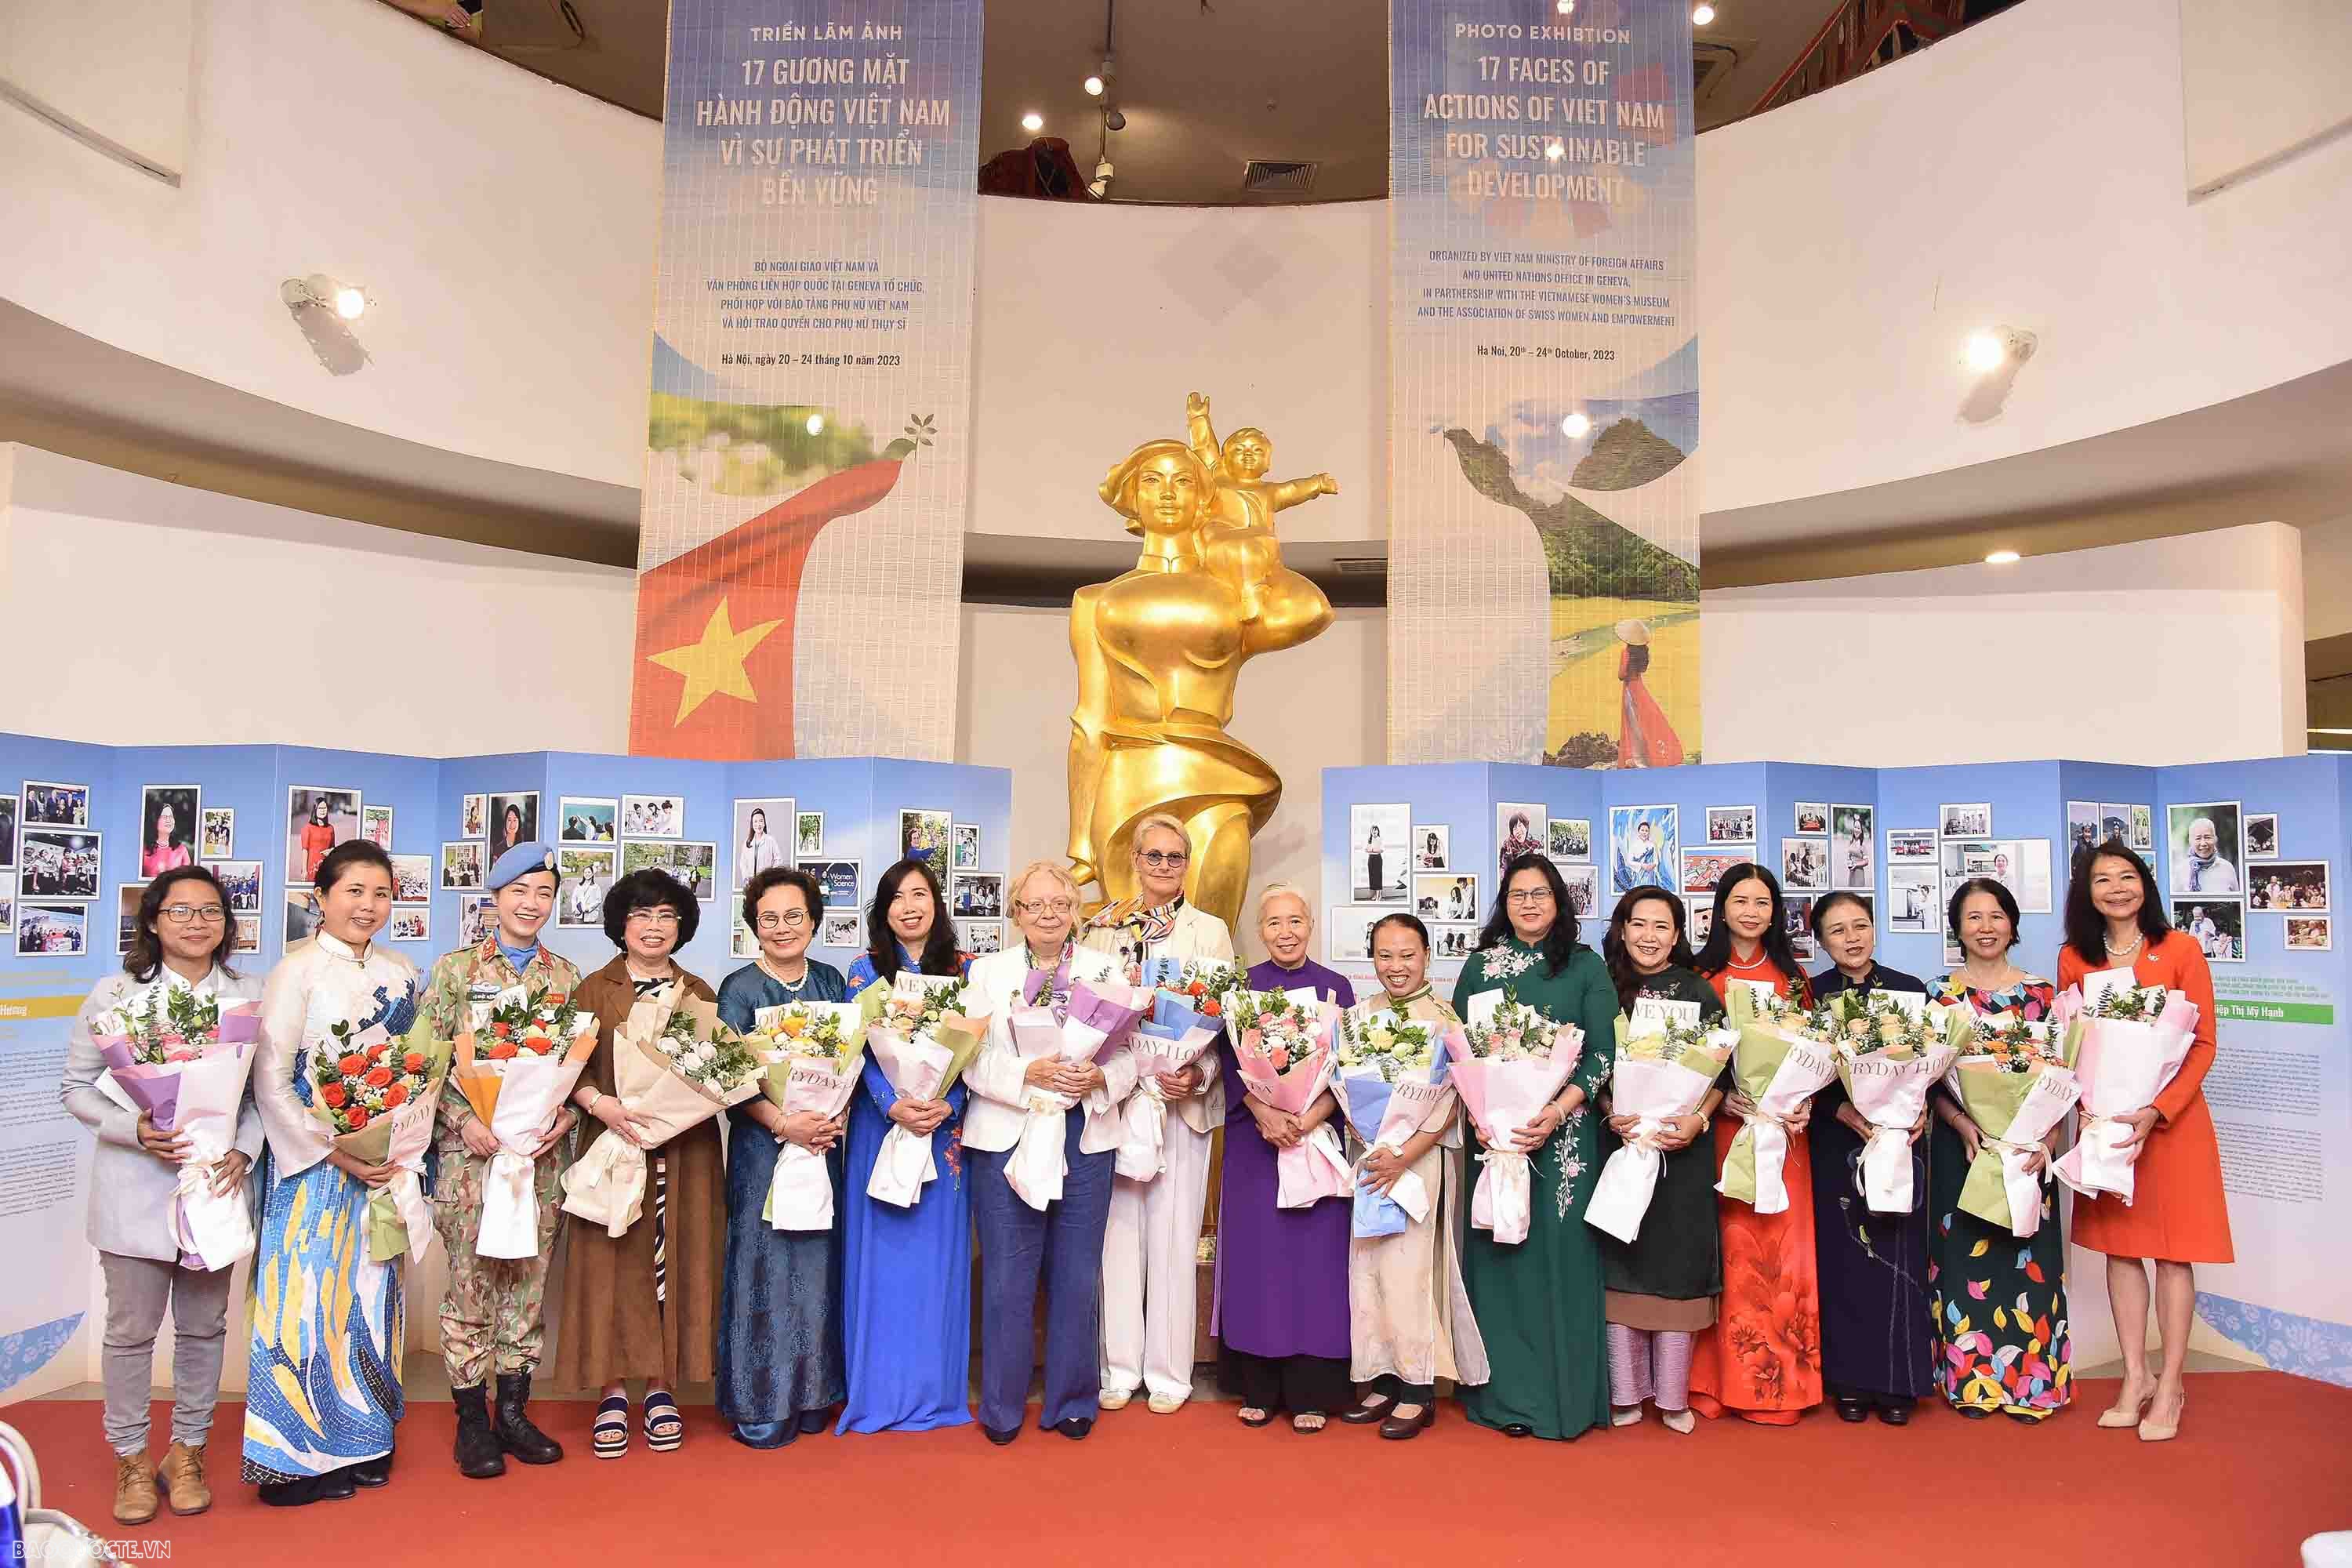 Khai mạc Triển lãm ảnh  '17 gương mặt Hành động Việt Nam vì sự phát triển bền vững'